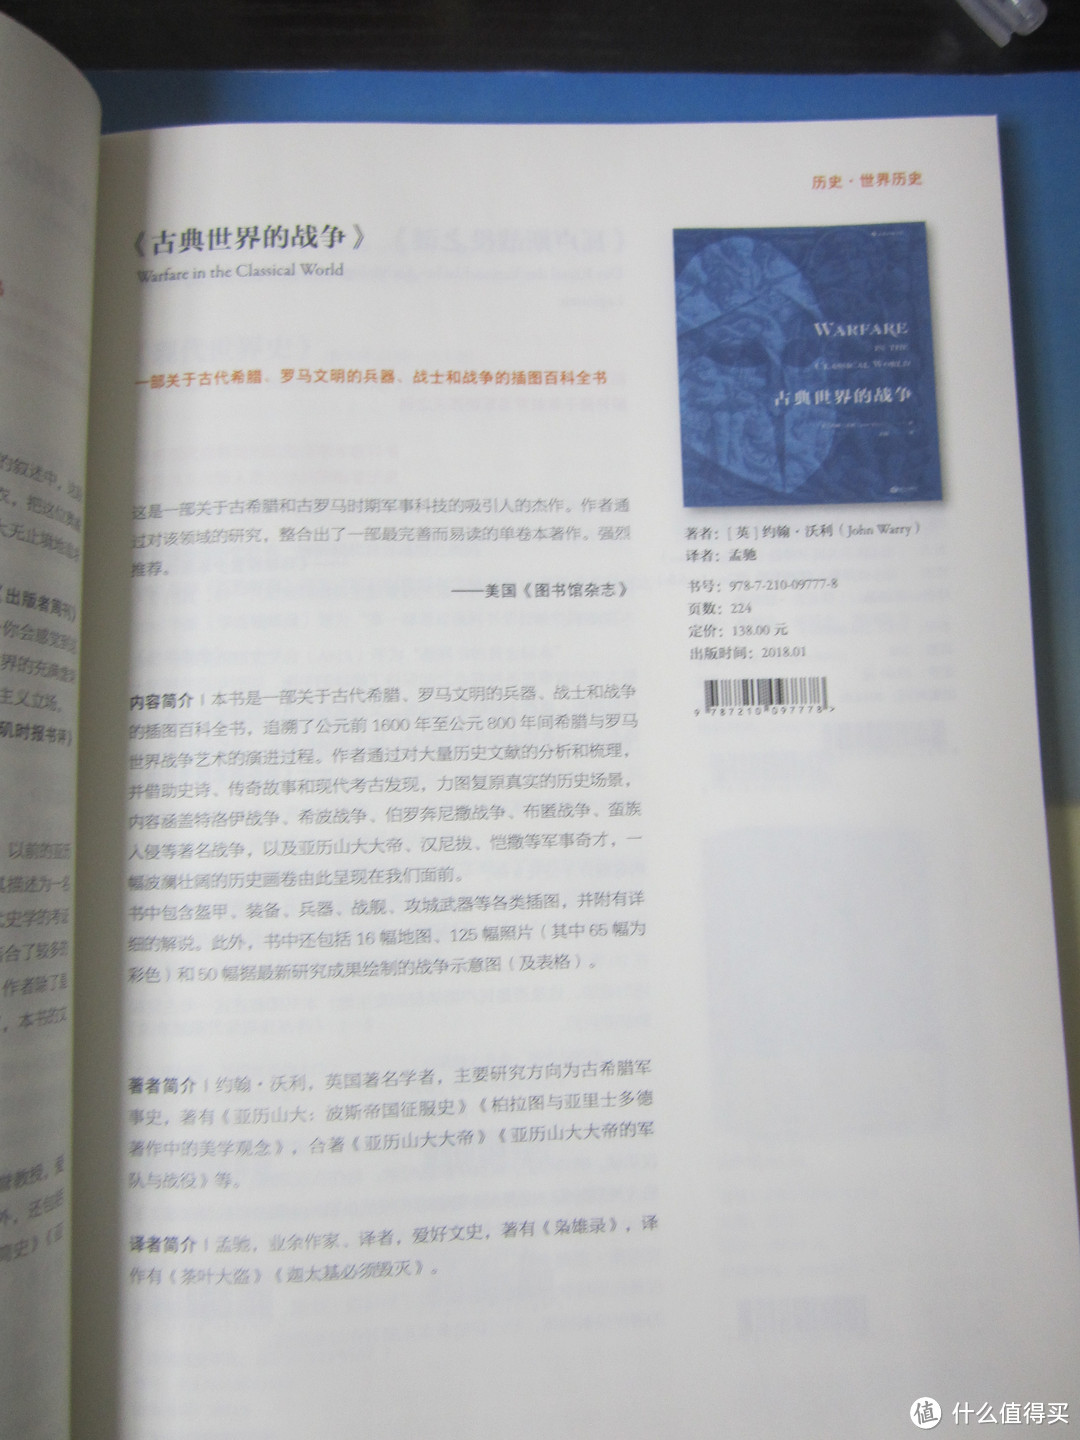 2018年北京图书订货会见闻（8号馆·民营出版机构）